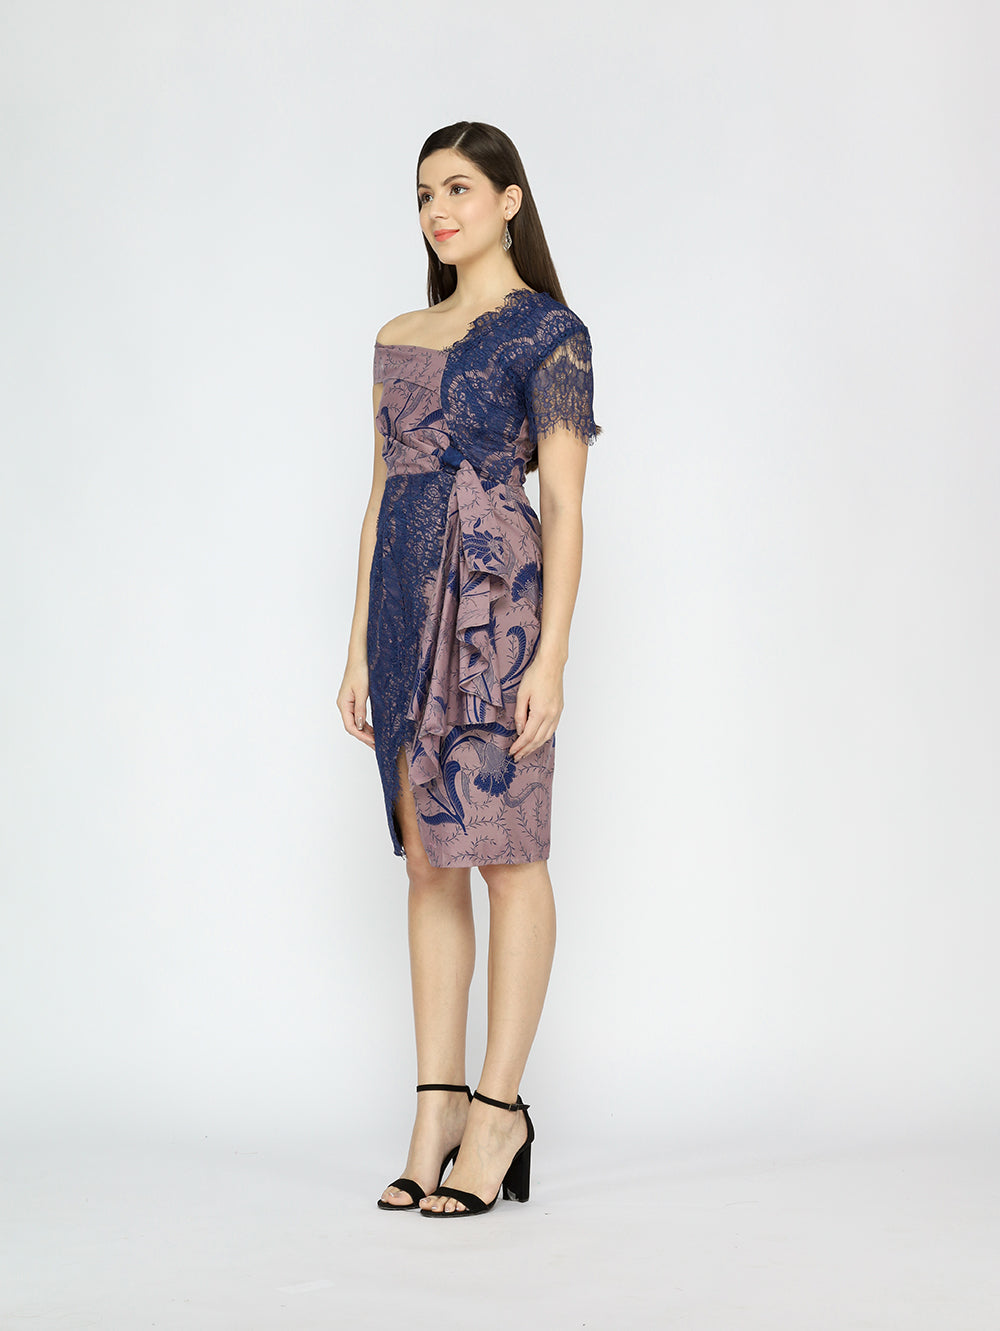 Dress Asymmetrical Sleeve Batik